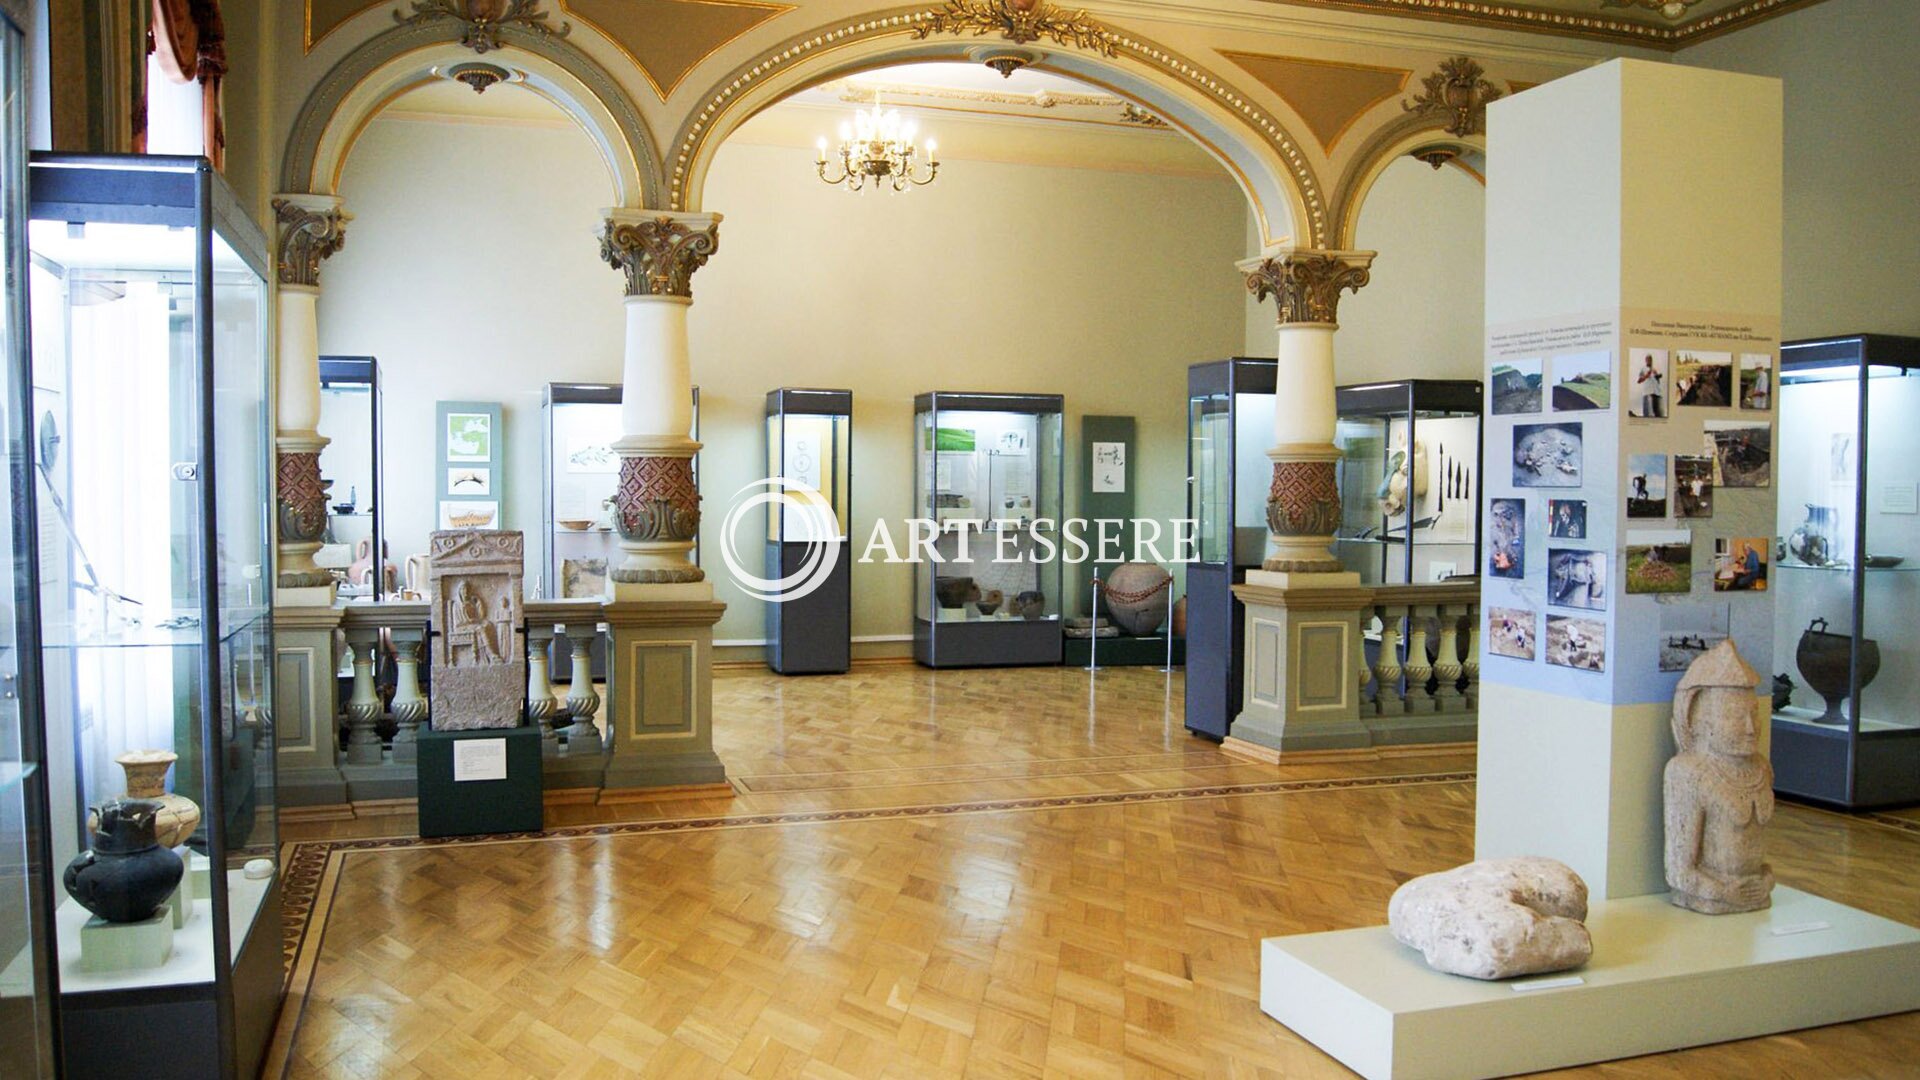 The Krasnodar State Historic and Archaeological Museum-Reserve of Felitsyn E.D.